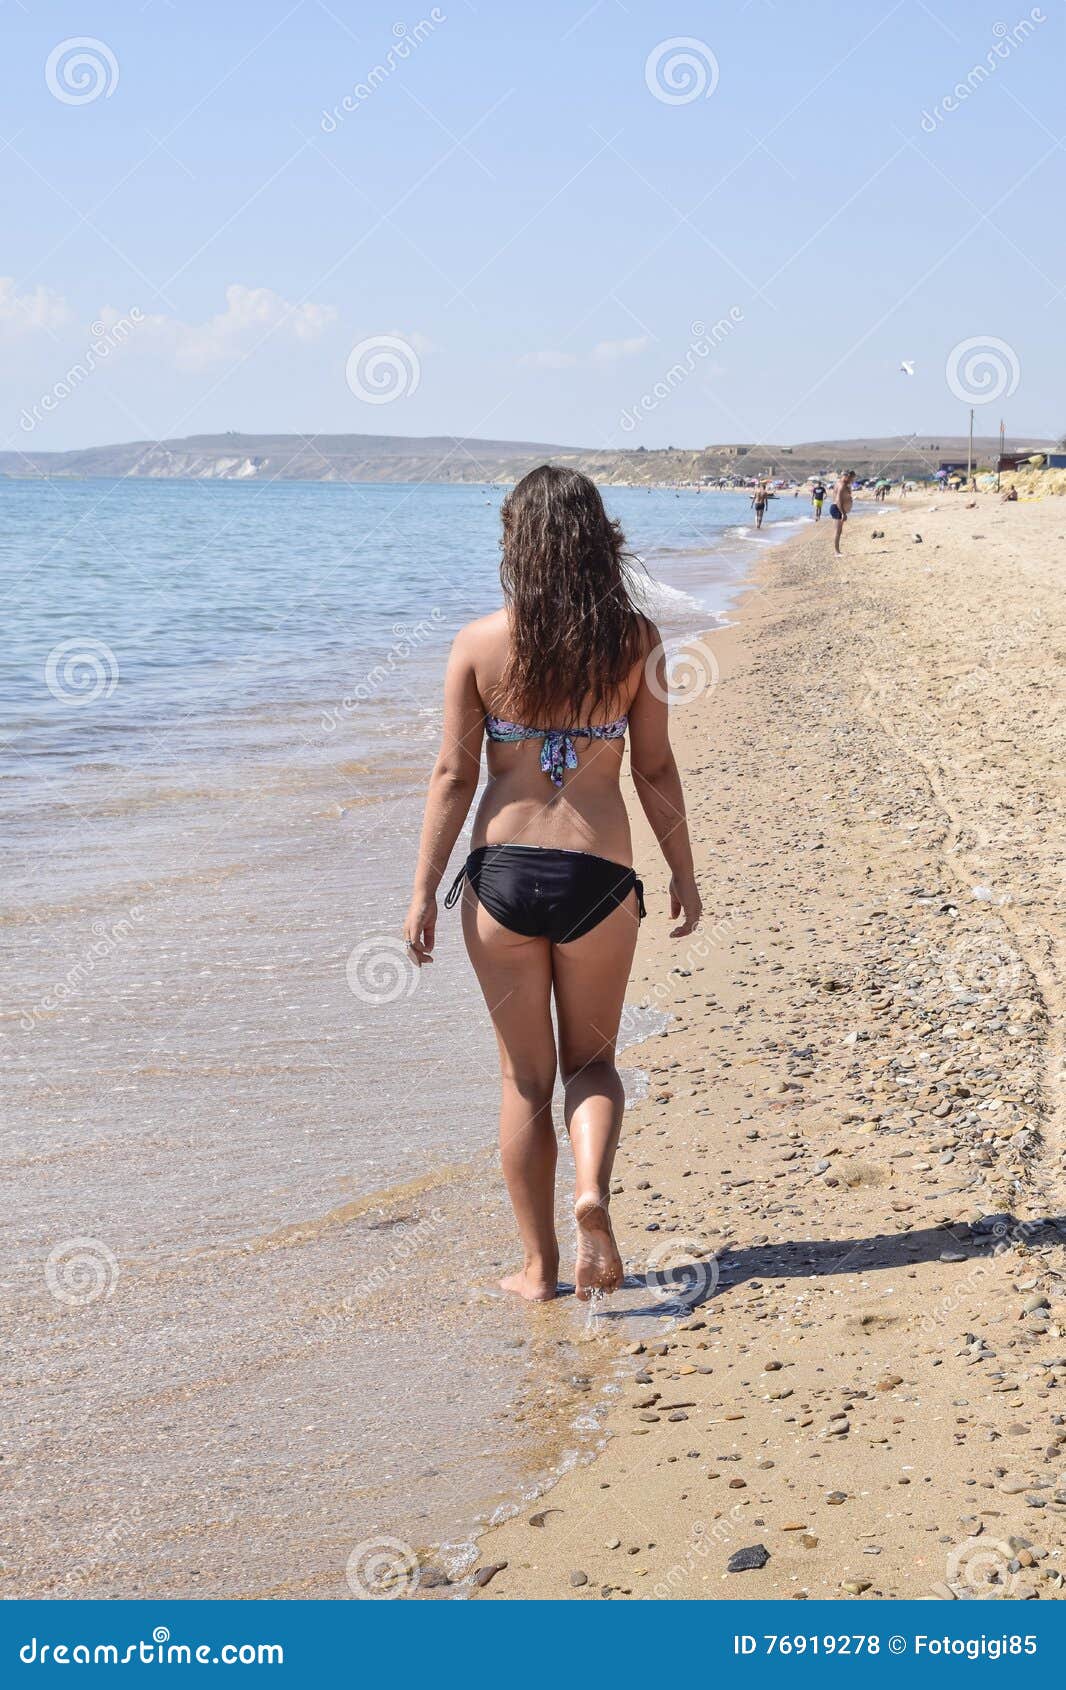 Фото Приколы Про Девушек Сзади На Пляже